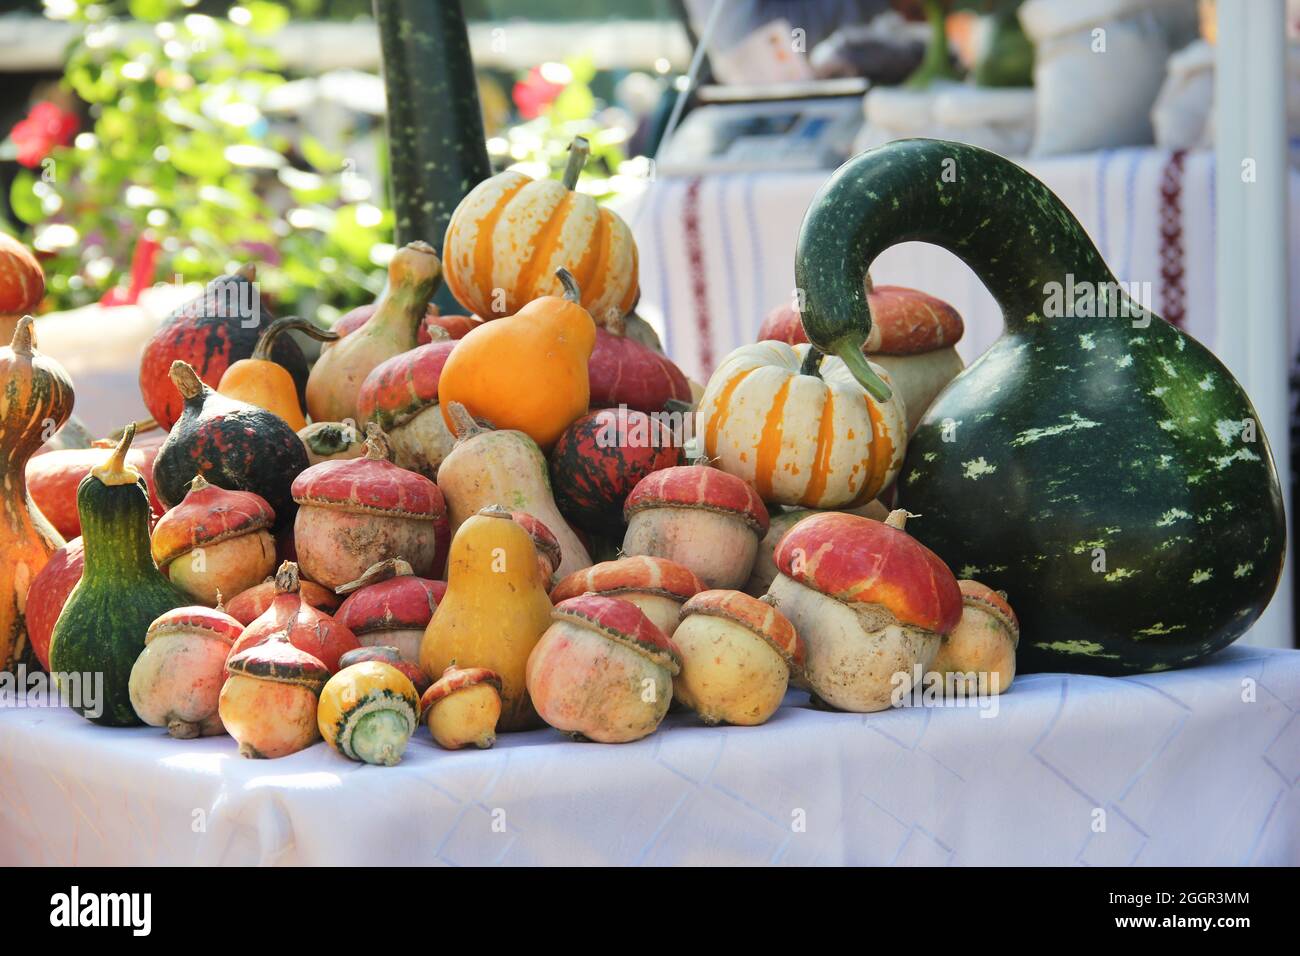 Autumn Colour Pumpkins im Whole Foods Market. Farbpaletten Im Herbst-Look. Gemüsemarkt im Herbst: Verschiedene Kürbis- und Kürbisse. VERSCHIEDENE PUMPK-ARTEN Stockfoto